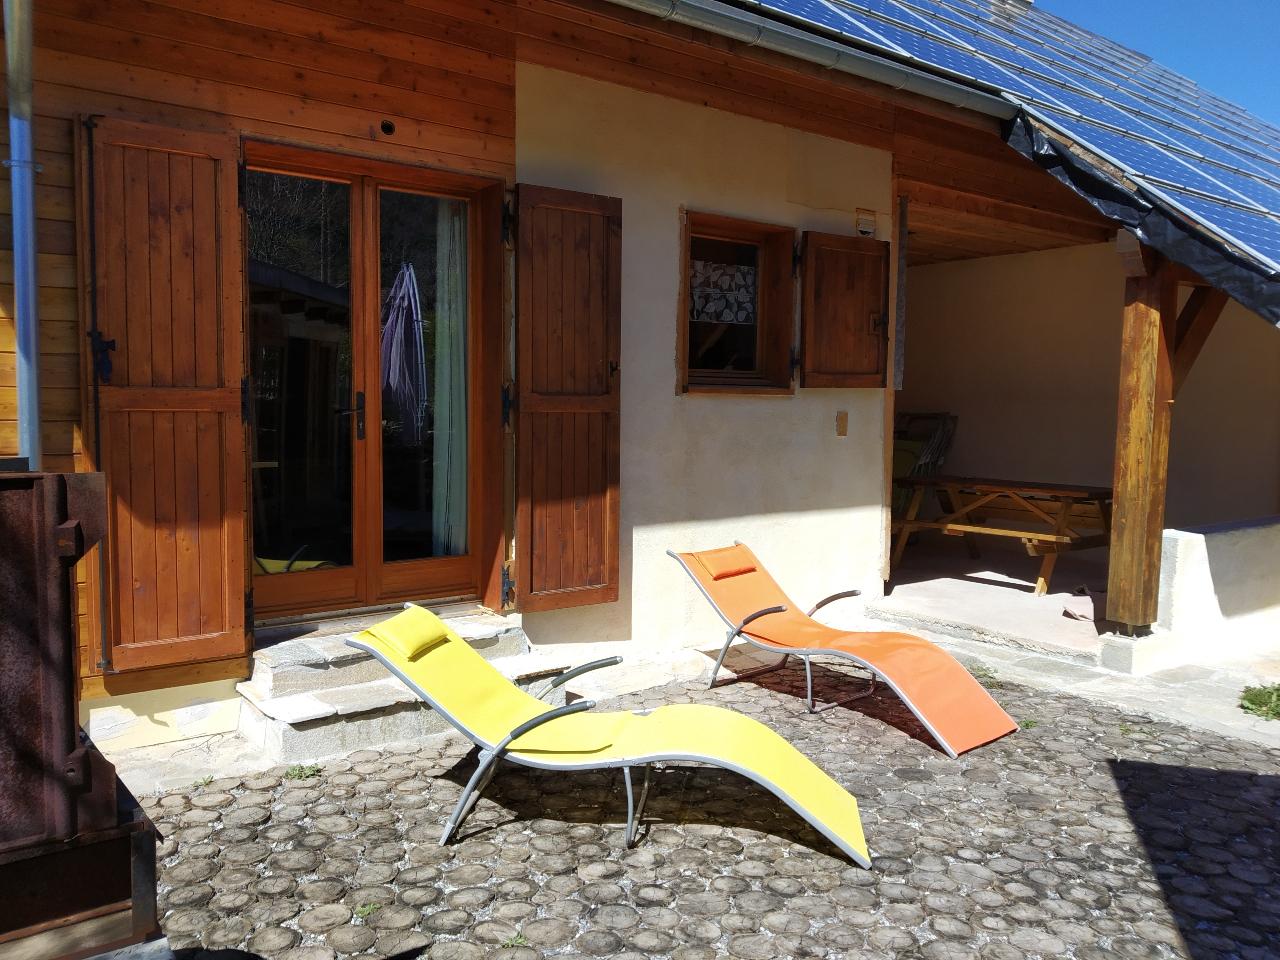 Hôte GreenGo: La Maison AuBoisDebout - Spa - Sauna - Plaisir d'accueillir - Image 19